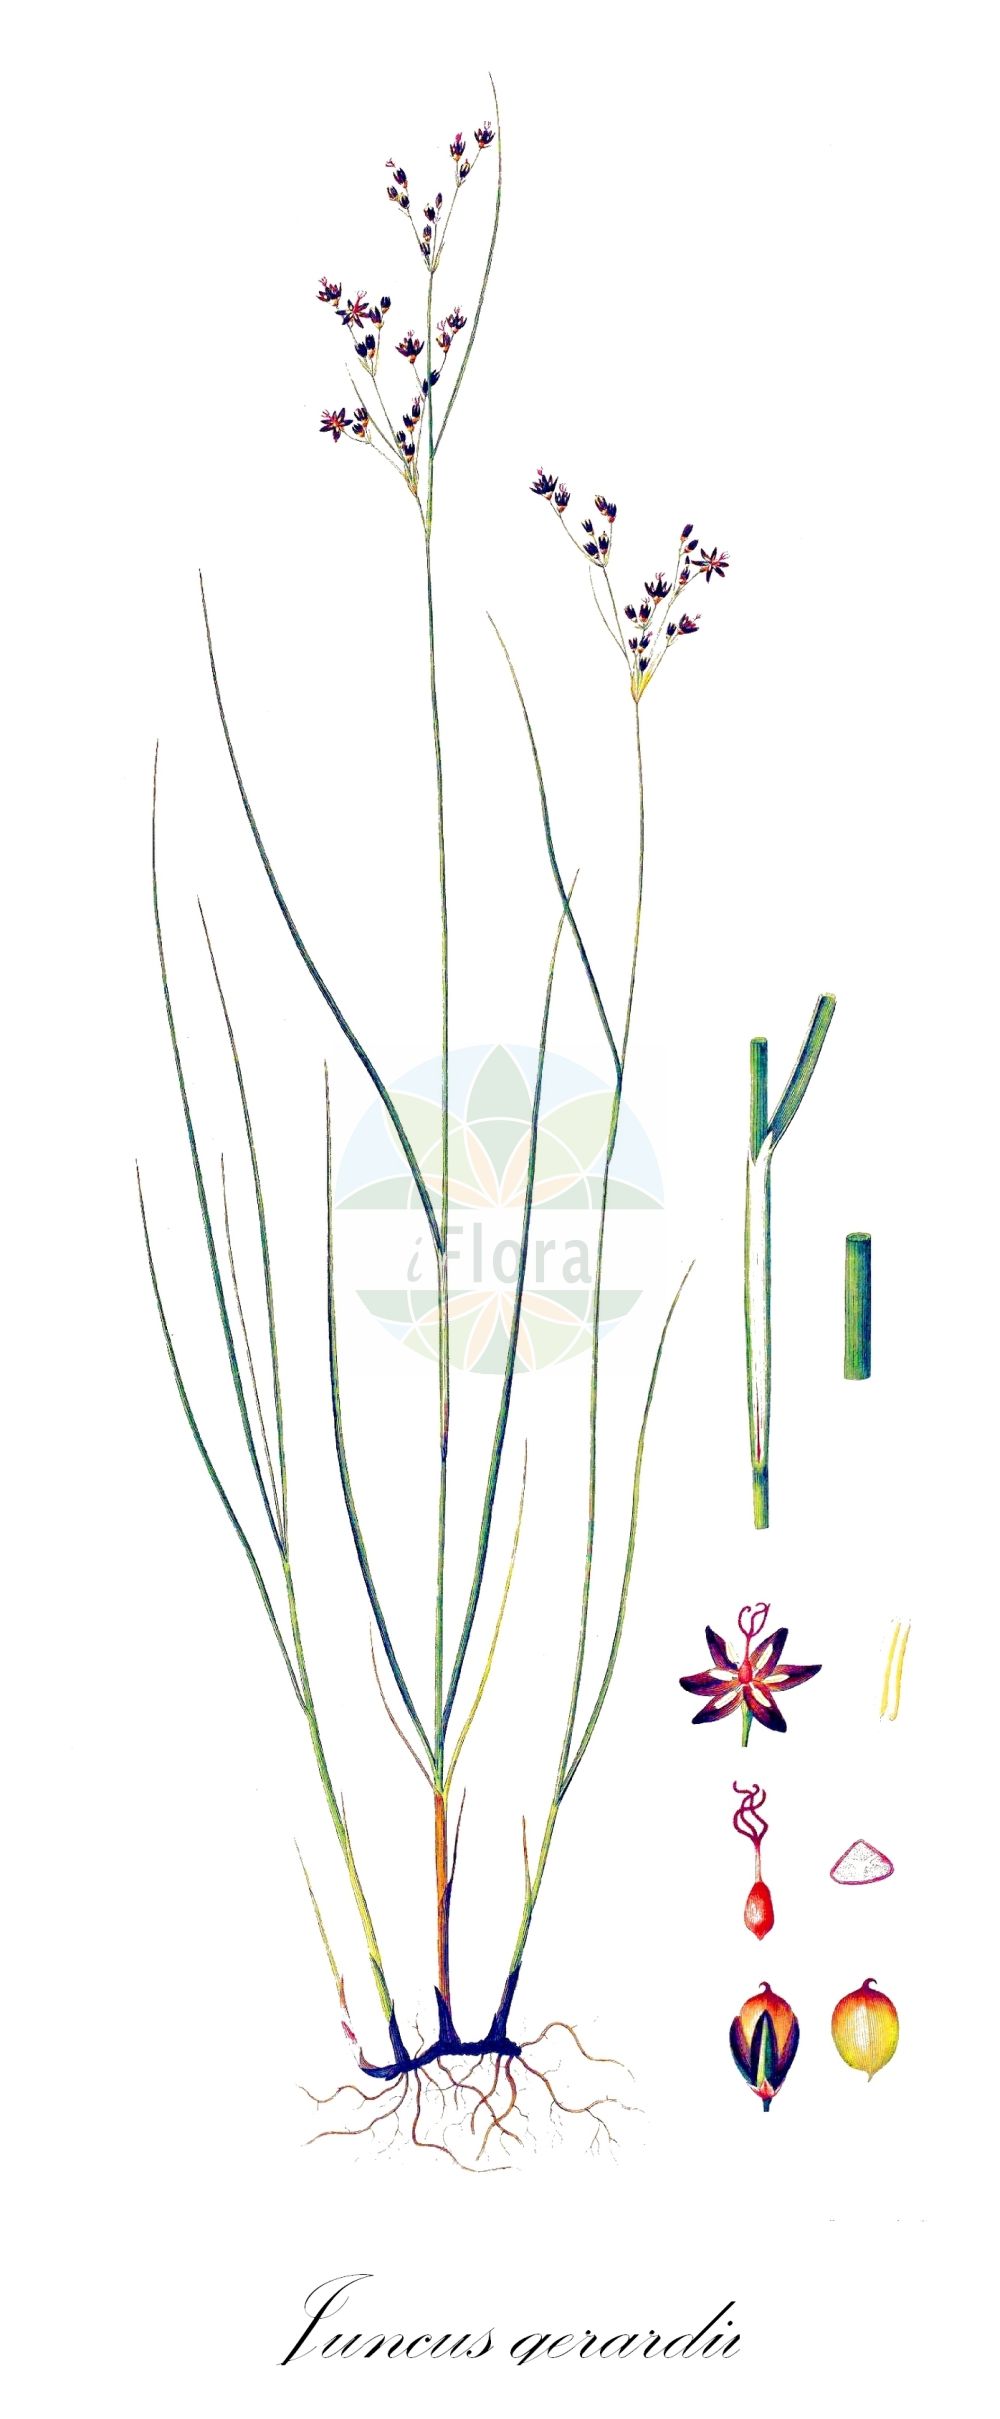 Historische Abbildung von Juncus gerardii (Bodden-Binse - Saltmarsh Rush). Das Bild zeigt Blatt, Bluete, Frucht und Same. ---- Historical Drawing of Juncus gerardii (Bodden-Binse - Saltmarsh Rush). The image is showing leaf, flower, fruit and seed.(Juncus gerardii,Bodden-Binse,Saltmarsh Rush,Juncus gerardii,Tenageia gerardi,Bodden-Binse,Saltmarsh Rush,Mud Rush,Saltmeadow Rush,Juncus,Binse,Rush,Juncaceae,Binsengewächse,Rush family,Blatt,Bluete,Frucht,Same,leaf,flower,fruit,seed,Oeder (1761-1883))